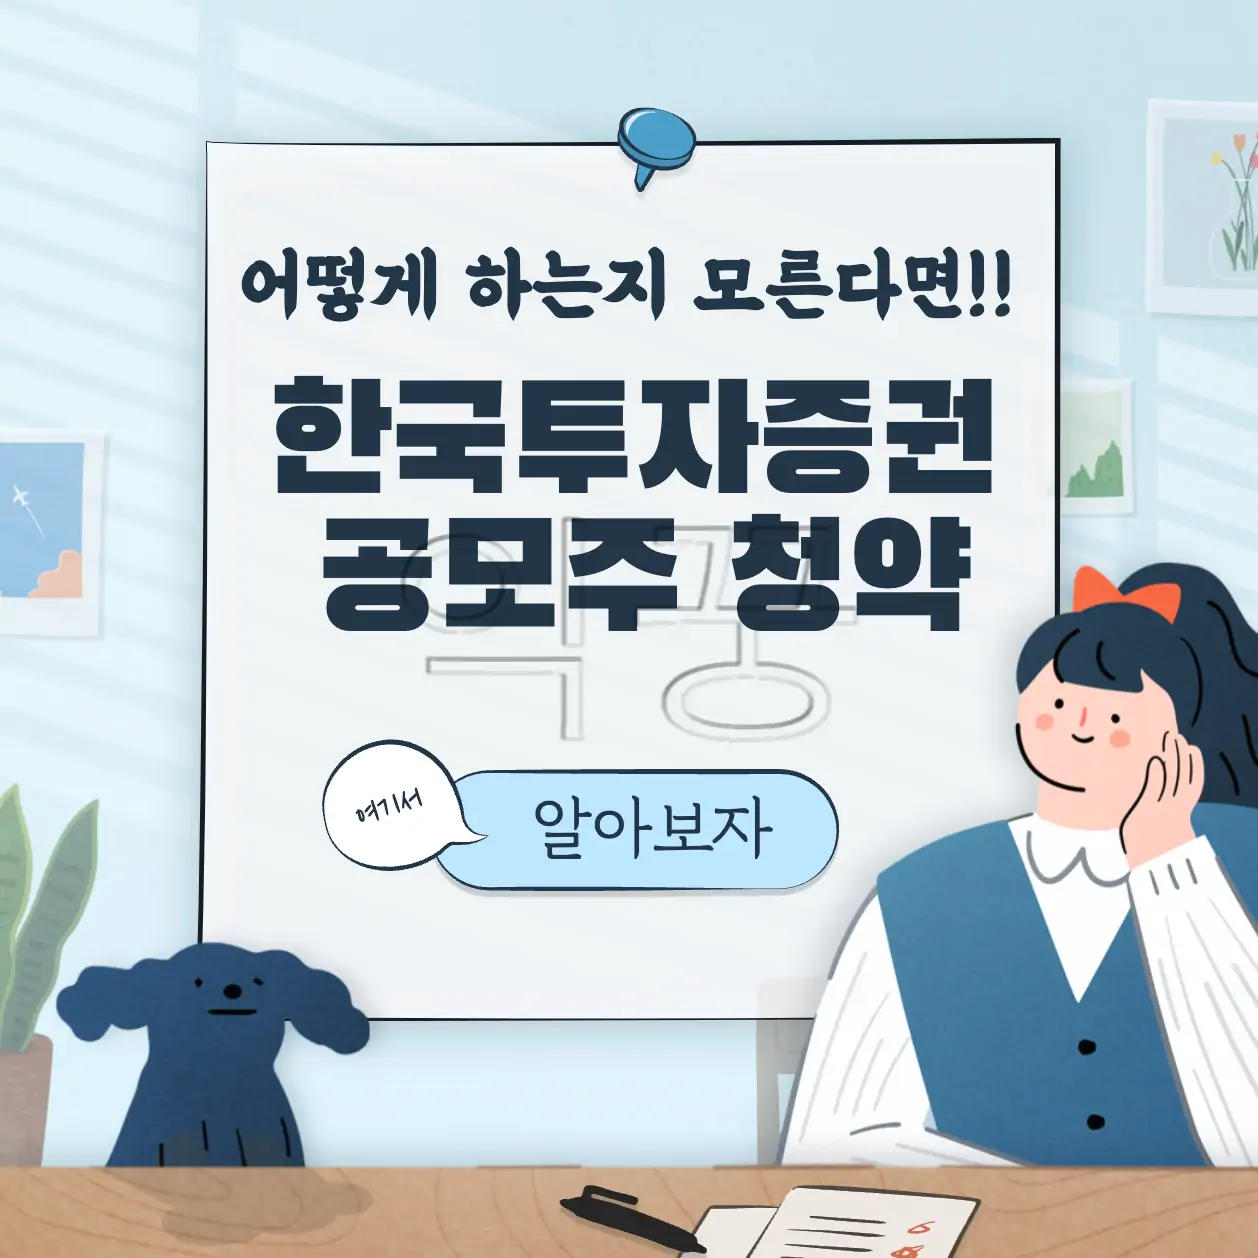 한국투자증권 앱에서 공모주청약 3분 만에 하는 방법 및 후기 표지